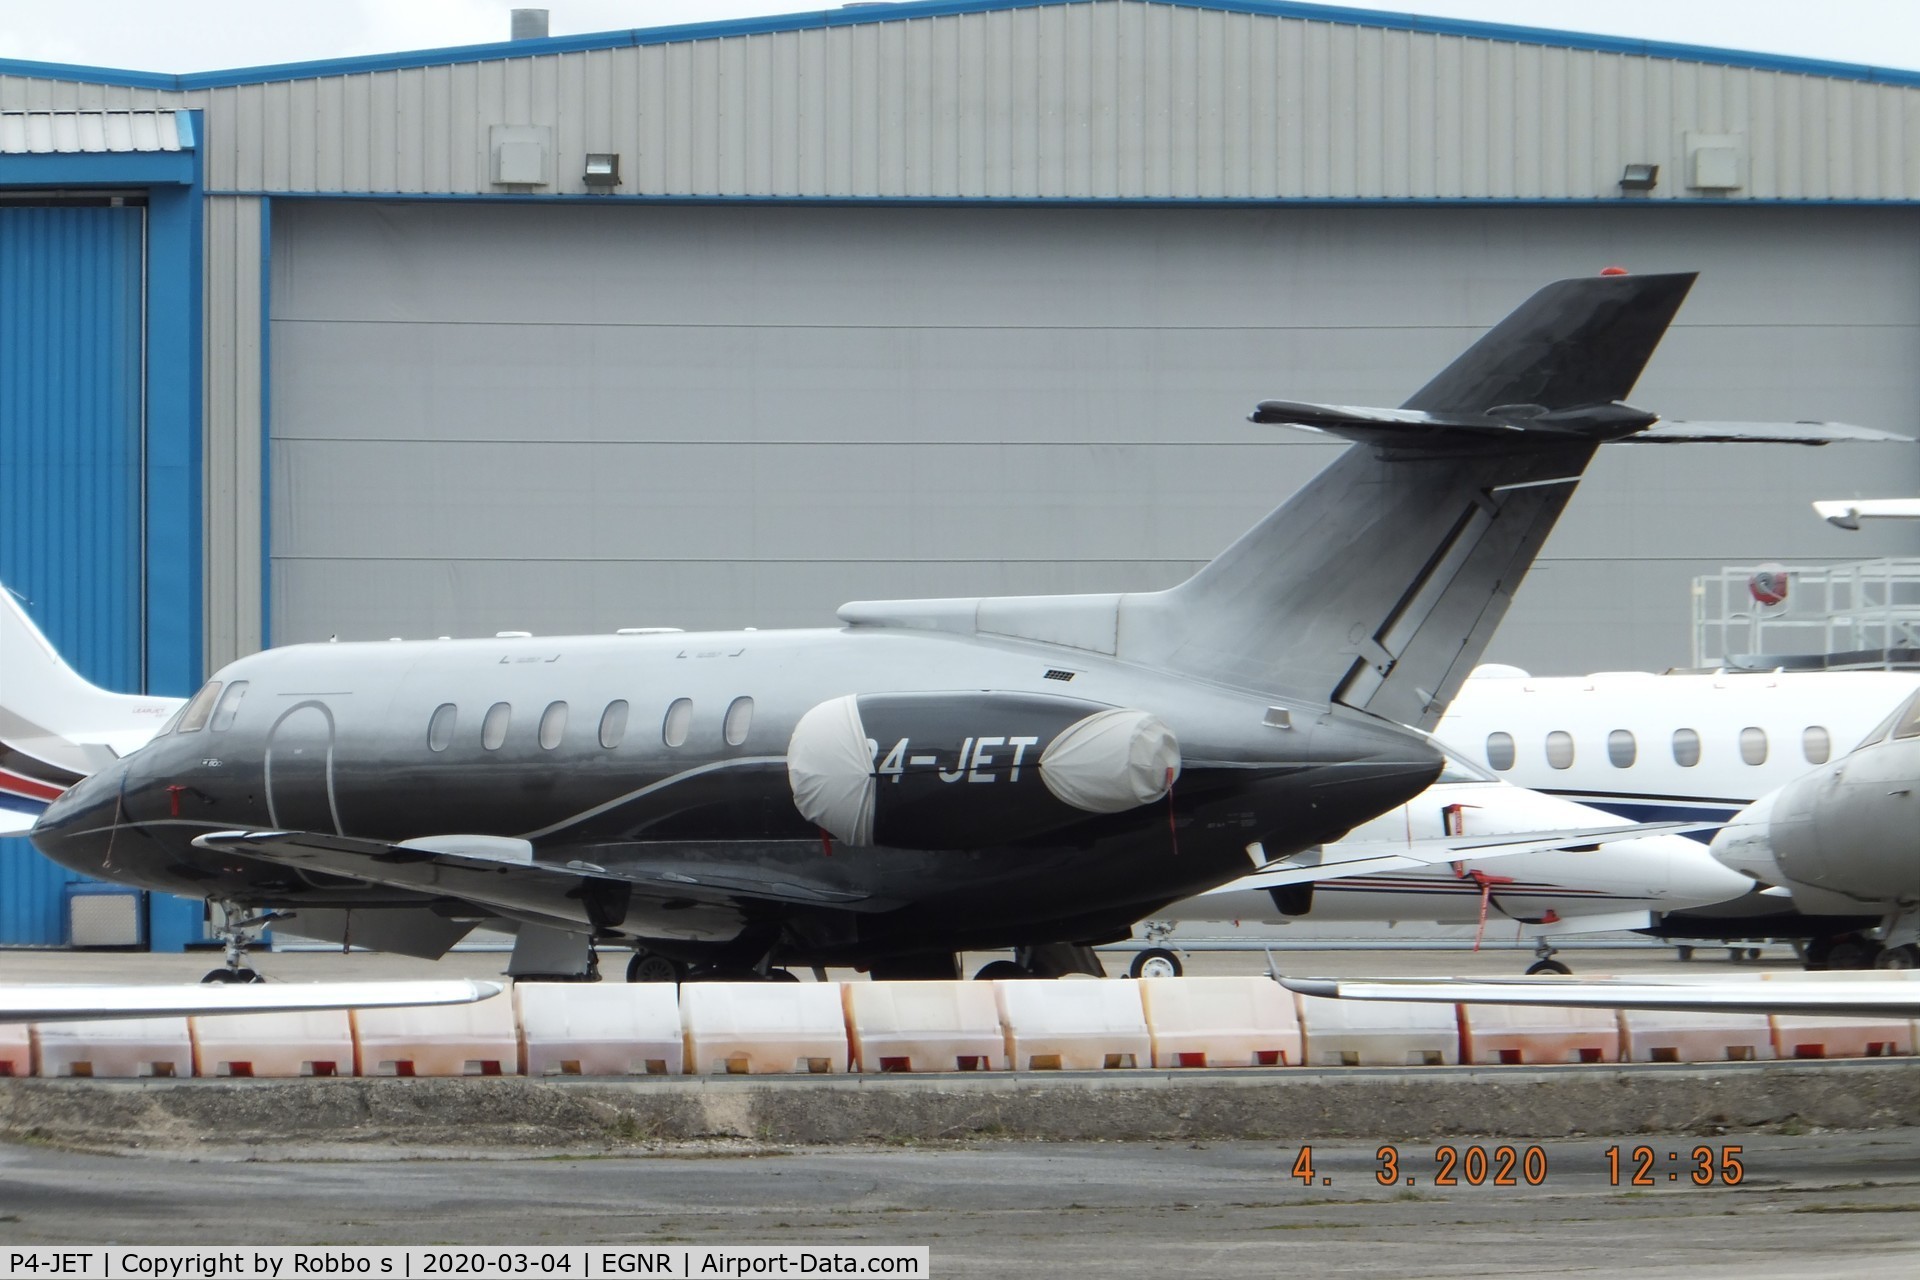 P4-JET, 1986 British Aerospace BAe.125-800B C/N 258056, P4-JET Bae 125-800B at EGNR